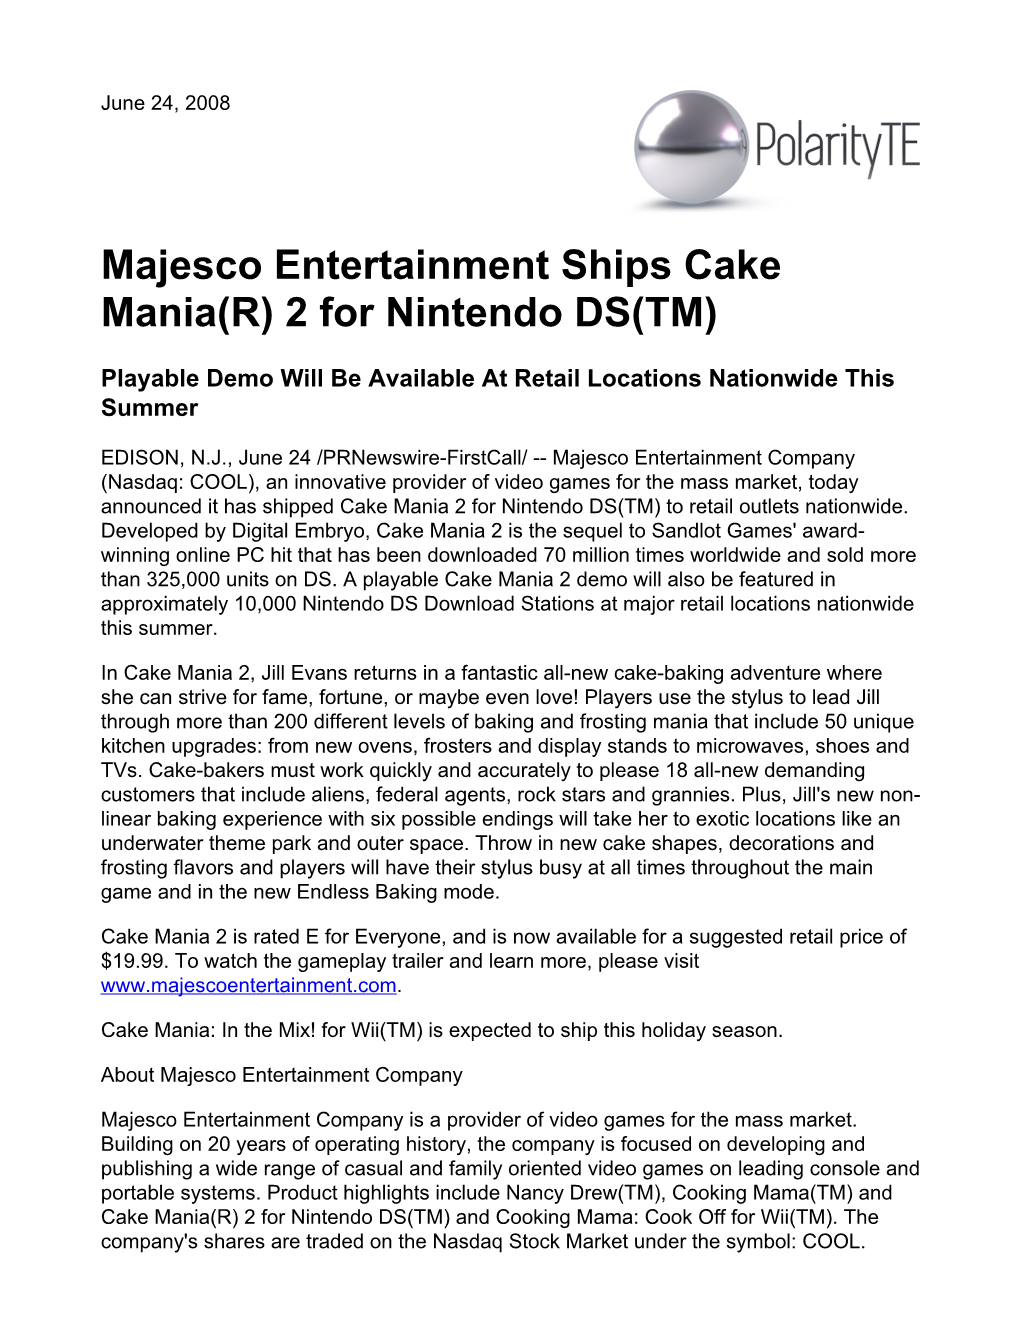 Majesco Entertainment Ships Cake Mania(R) 2 for Nintendo DS(TM)